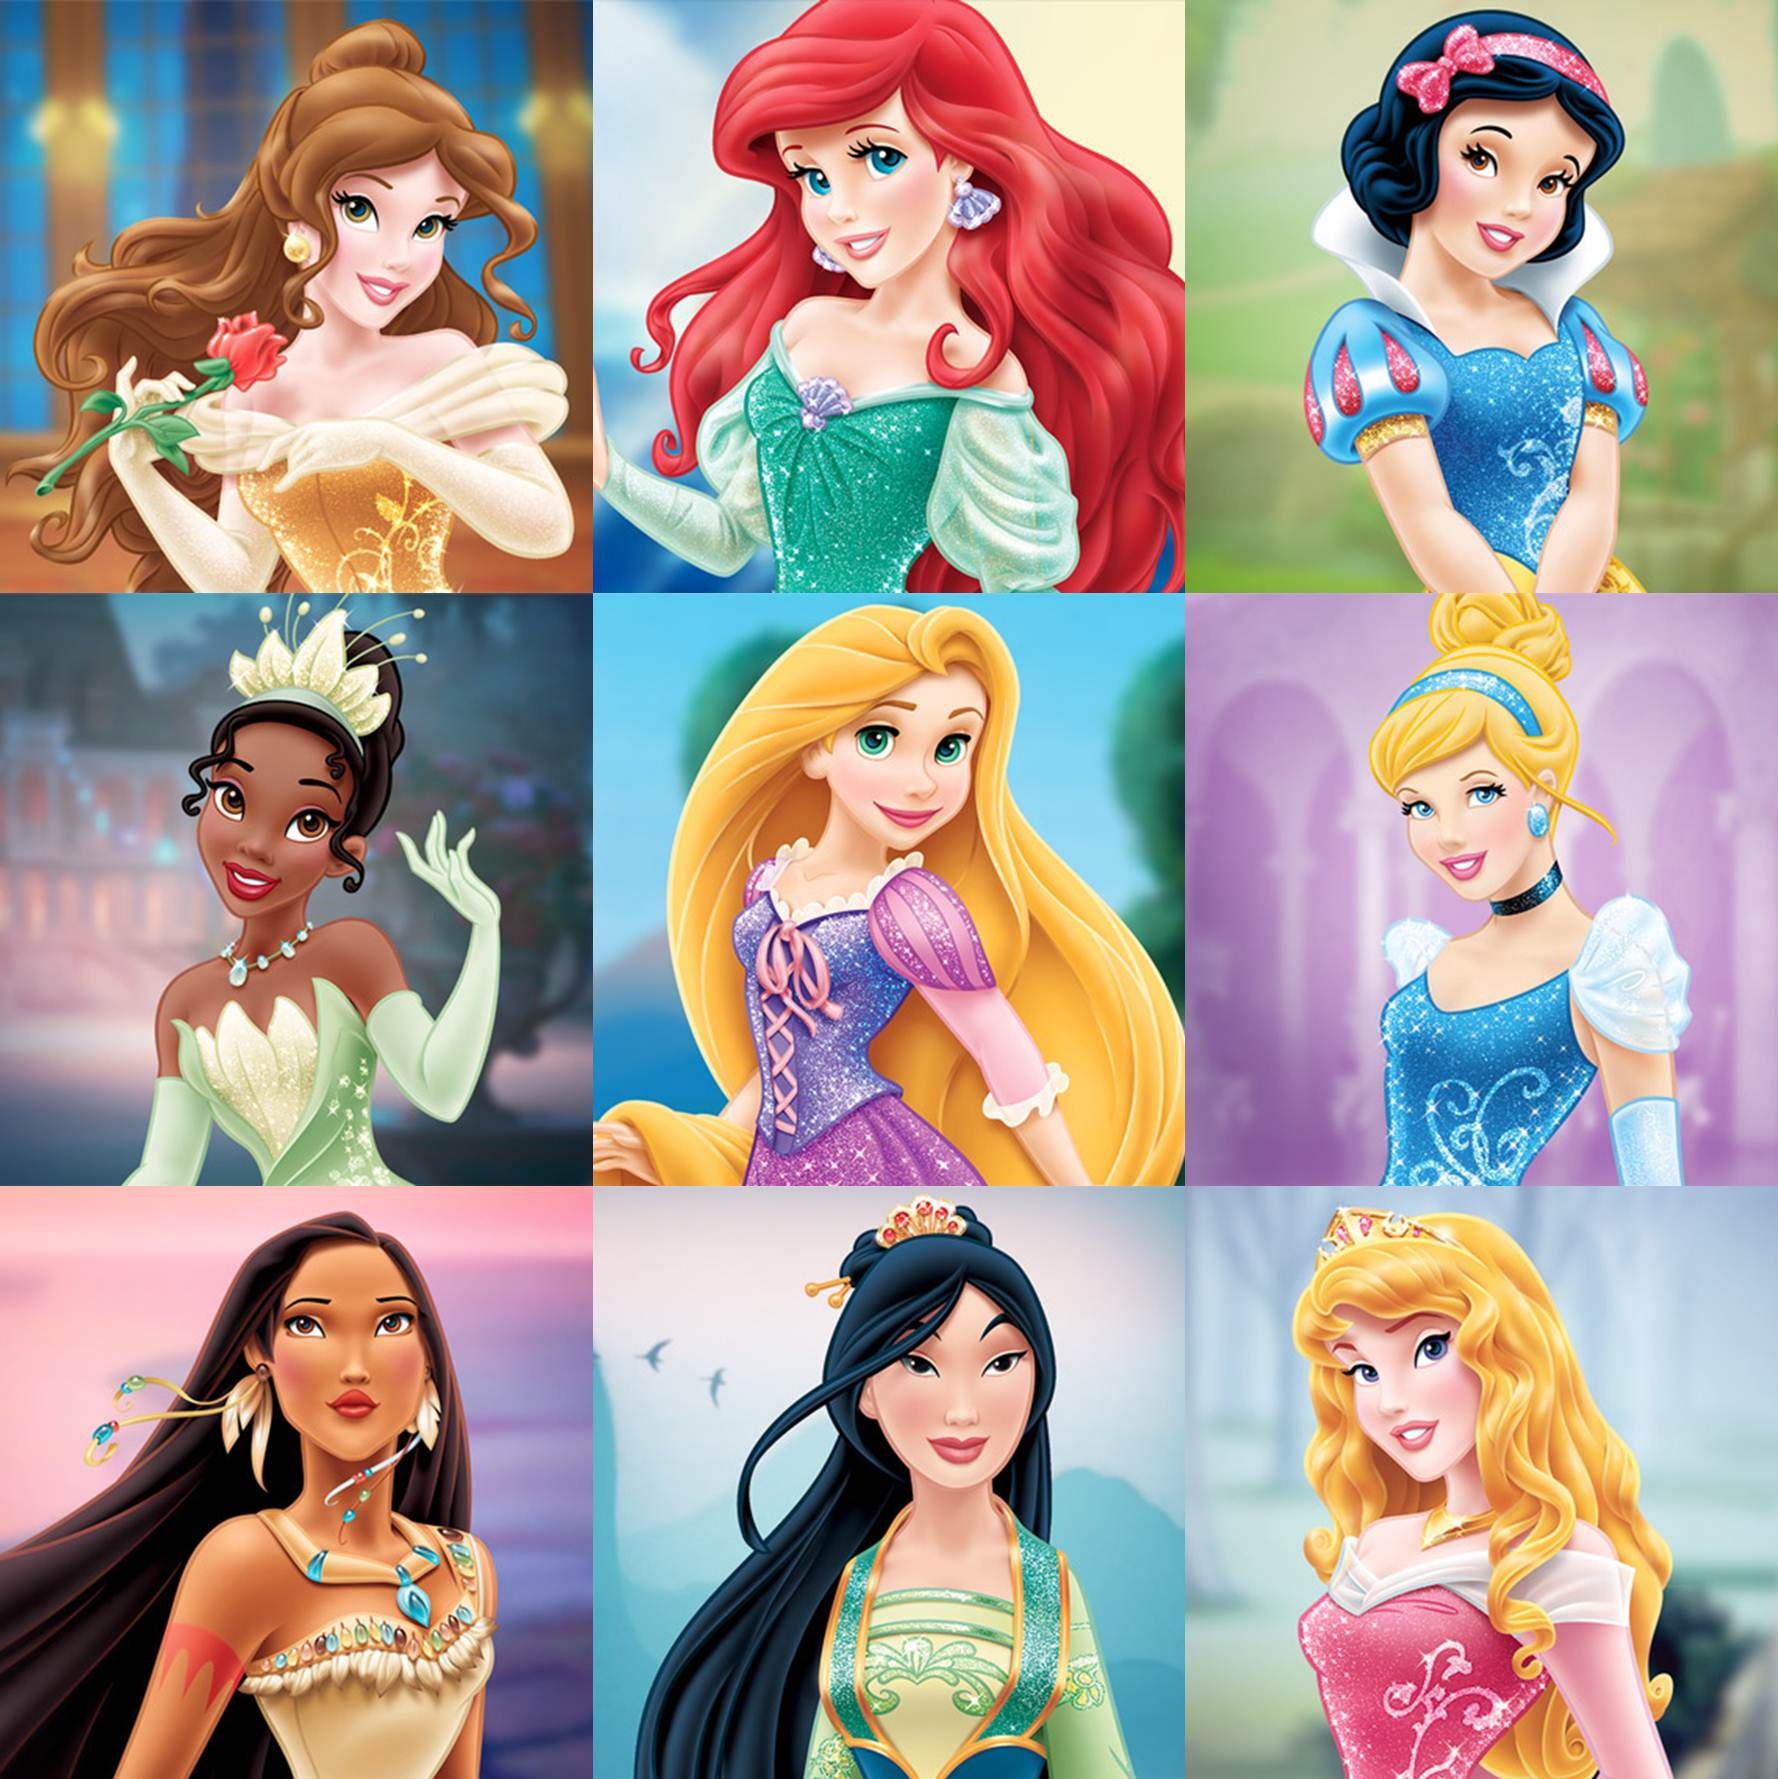 How Well Do You Know The Disney Princesses?